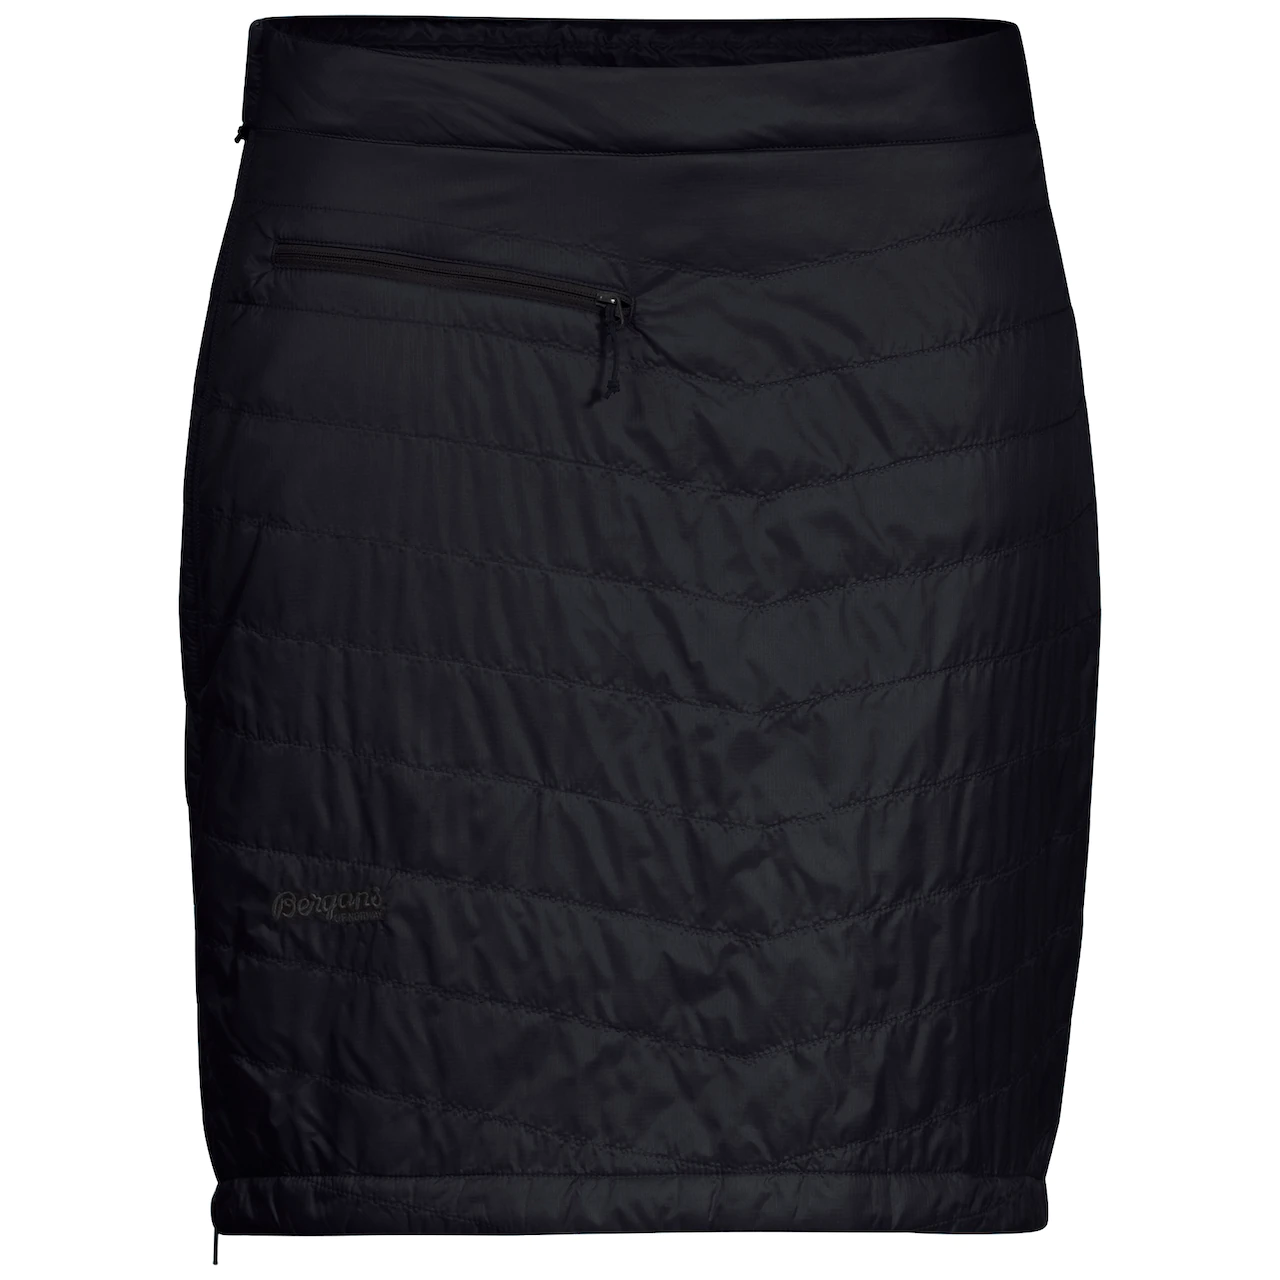 Bergans "Roros Ins Skirt" - black